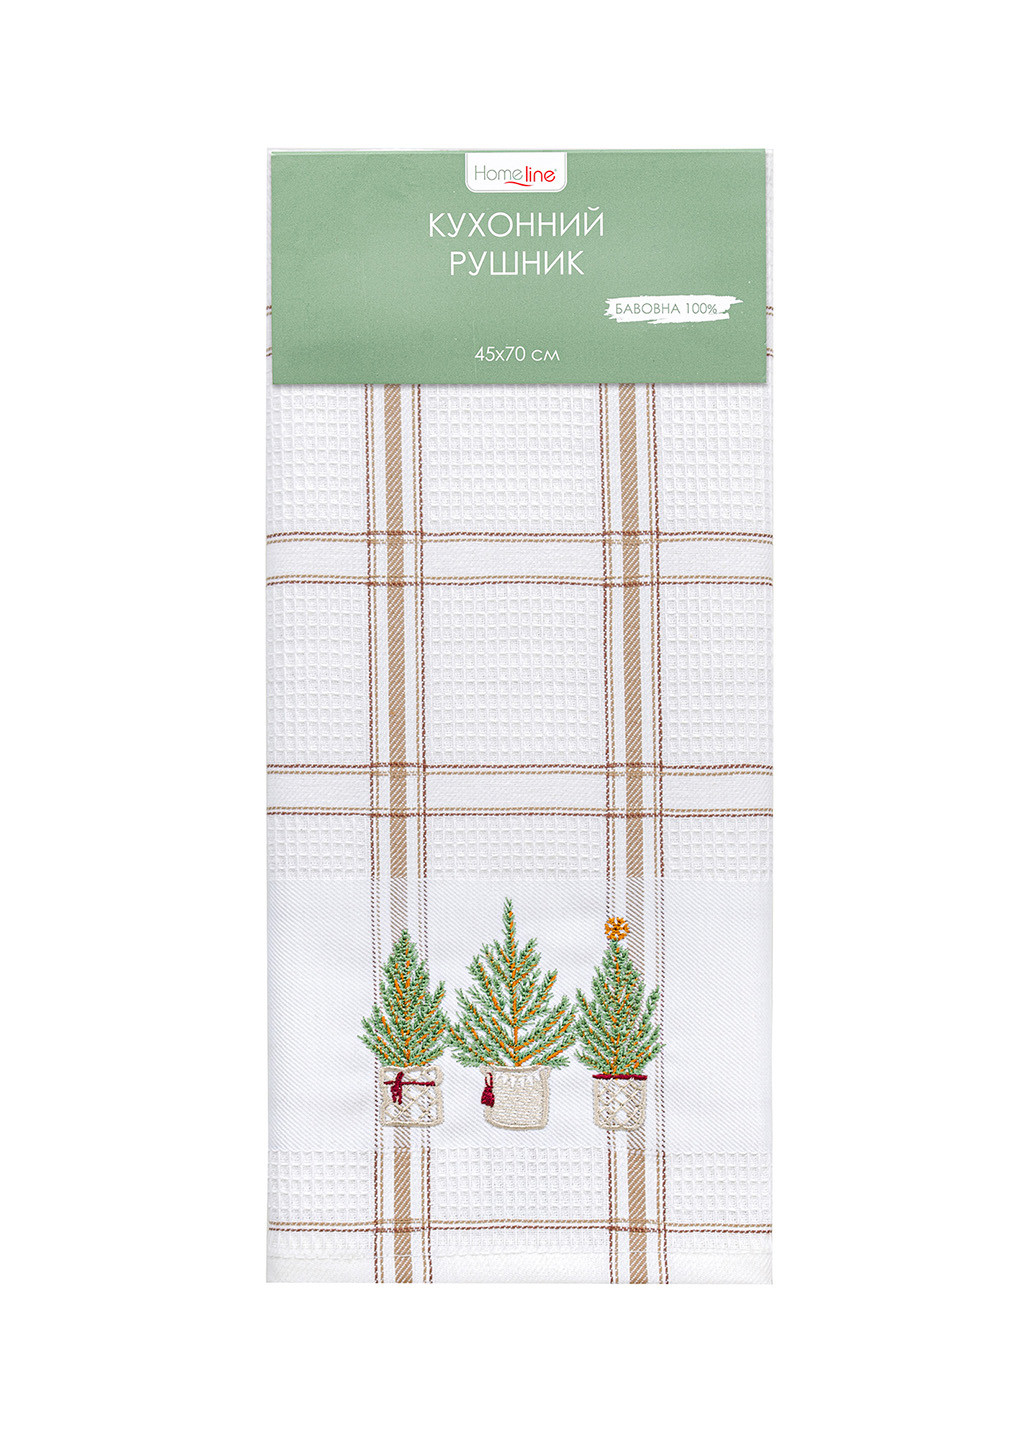 Home Line полотенце вафельное 45х70 с вышивкой новогодний коричневый производство - Турция